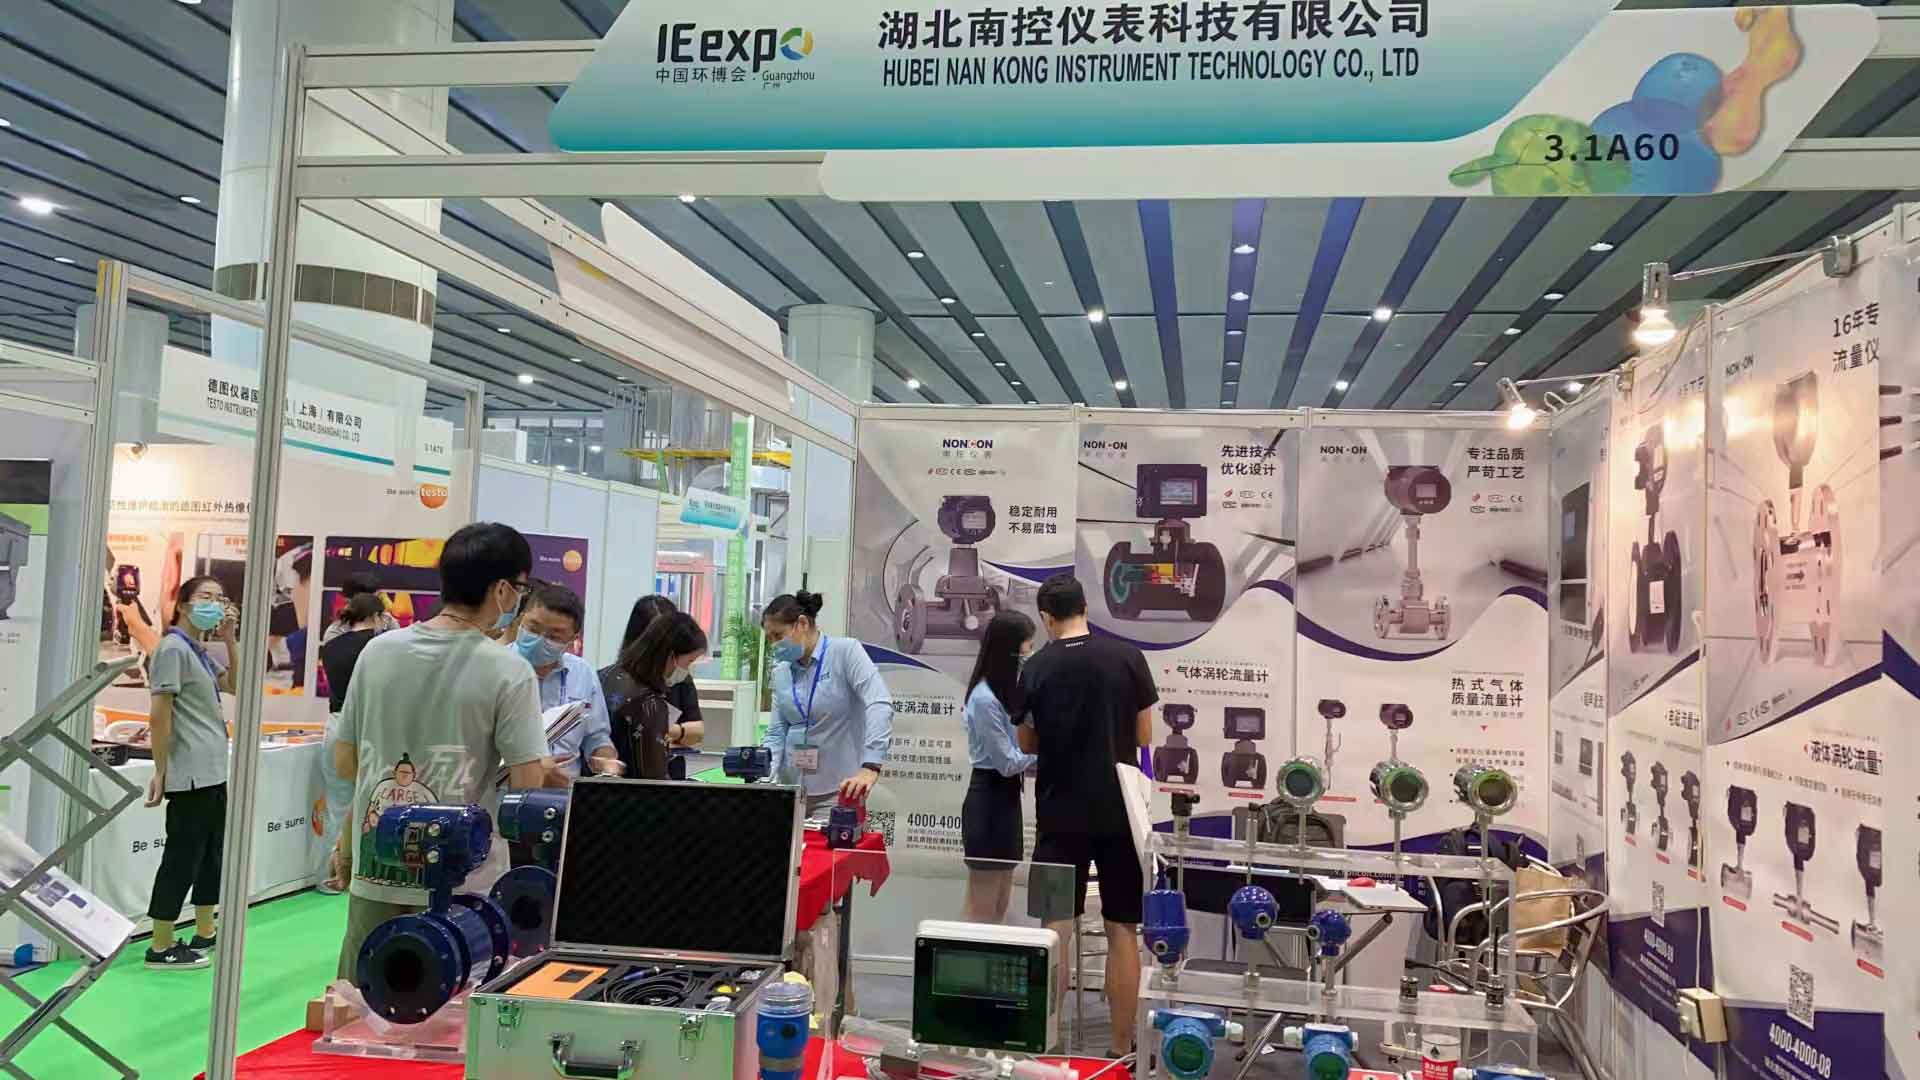 Hubei Nan Kong Instrument Technology Co., Ltd